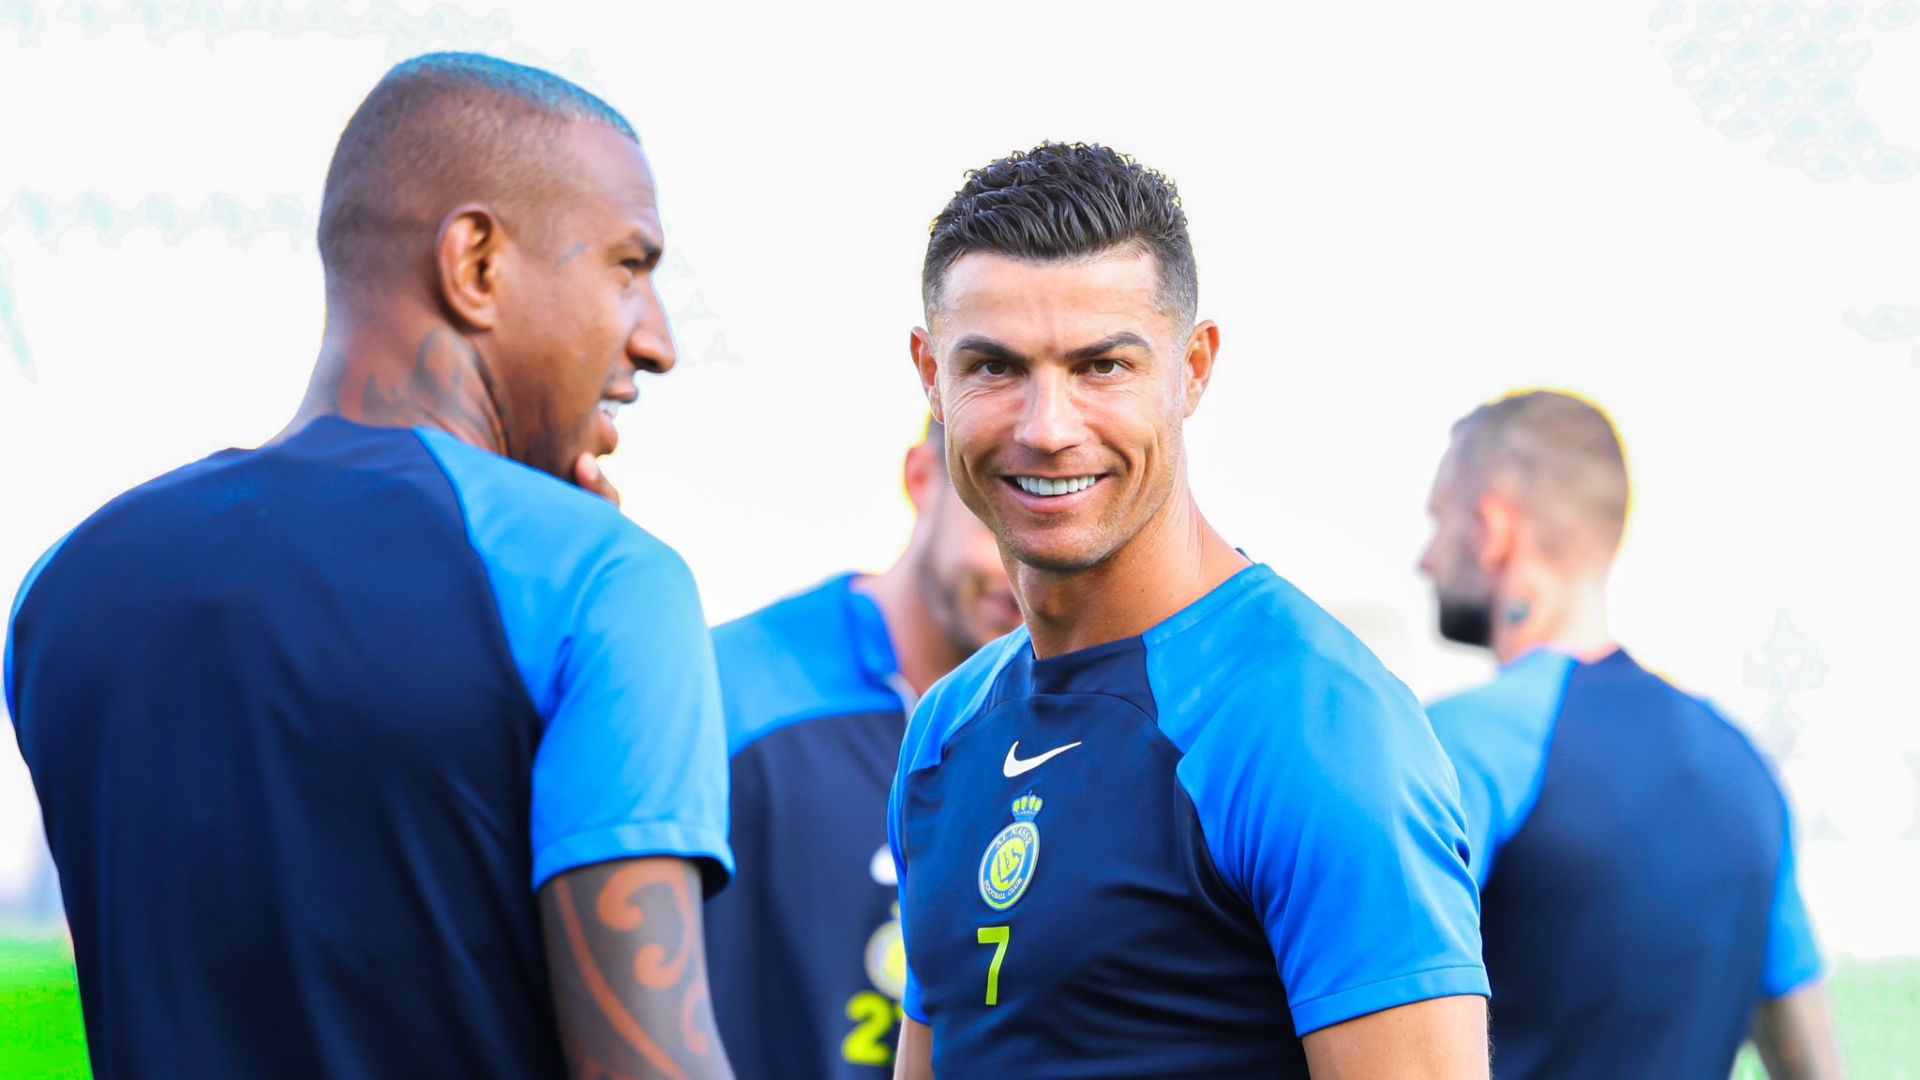 El jugador del Al-Nassr, Cristiano Ronaldo, durante una sesión de entrenamiento junto a sus compañeros. (Foto Prensa Libre: AlNassrfc_eng)